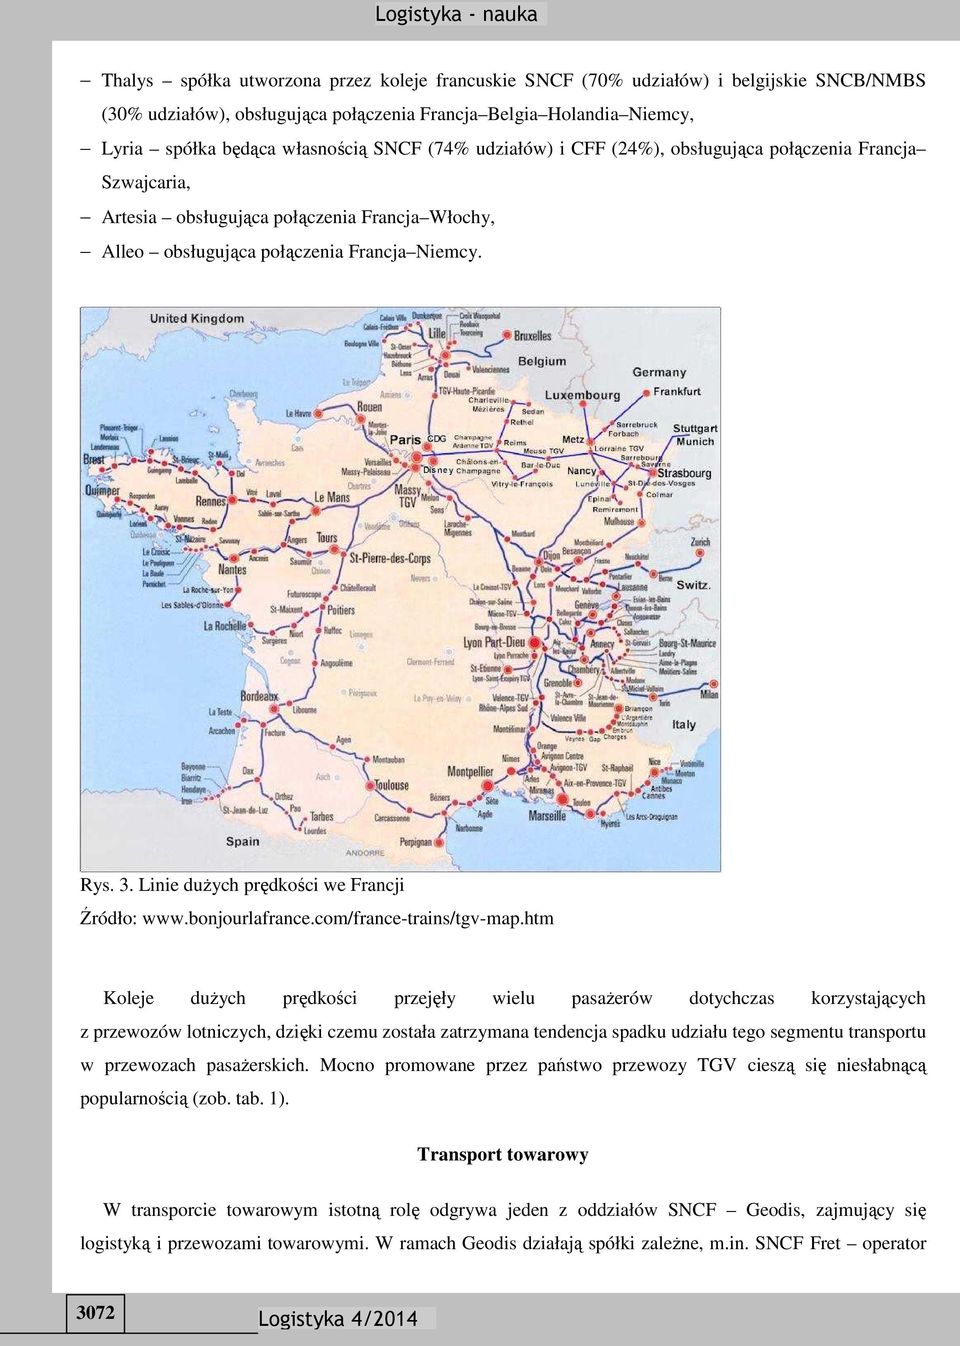 Linie dużych prędkości we Francji Źródło: www.bonjourlafrance.com/france-trains/tgv-map.